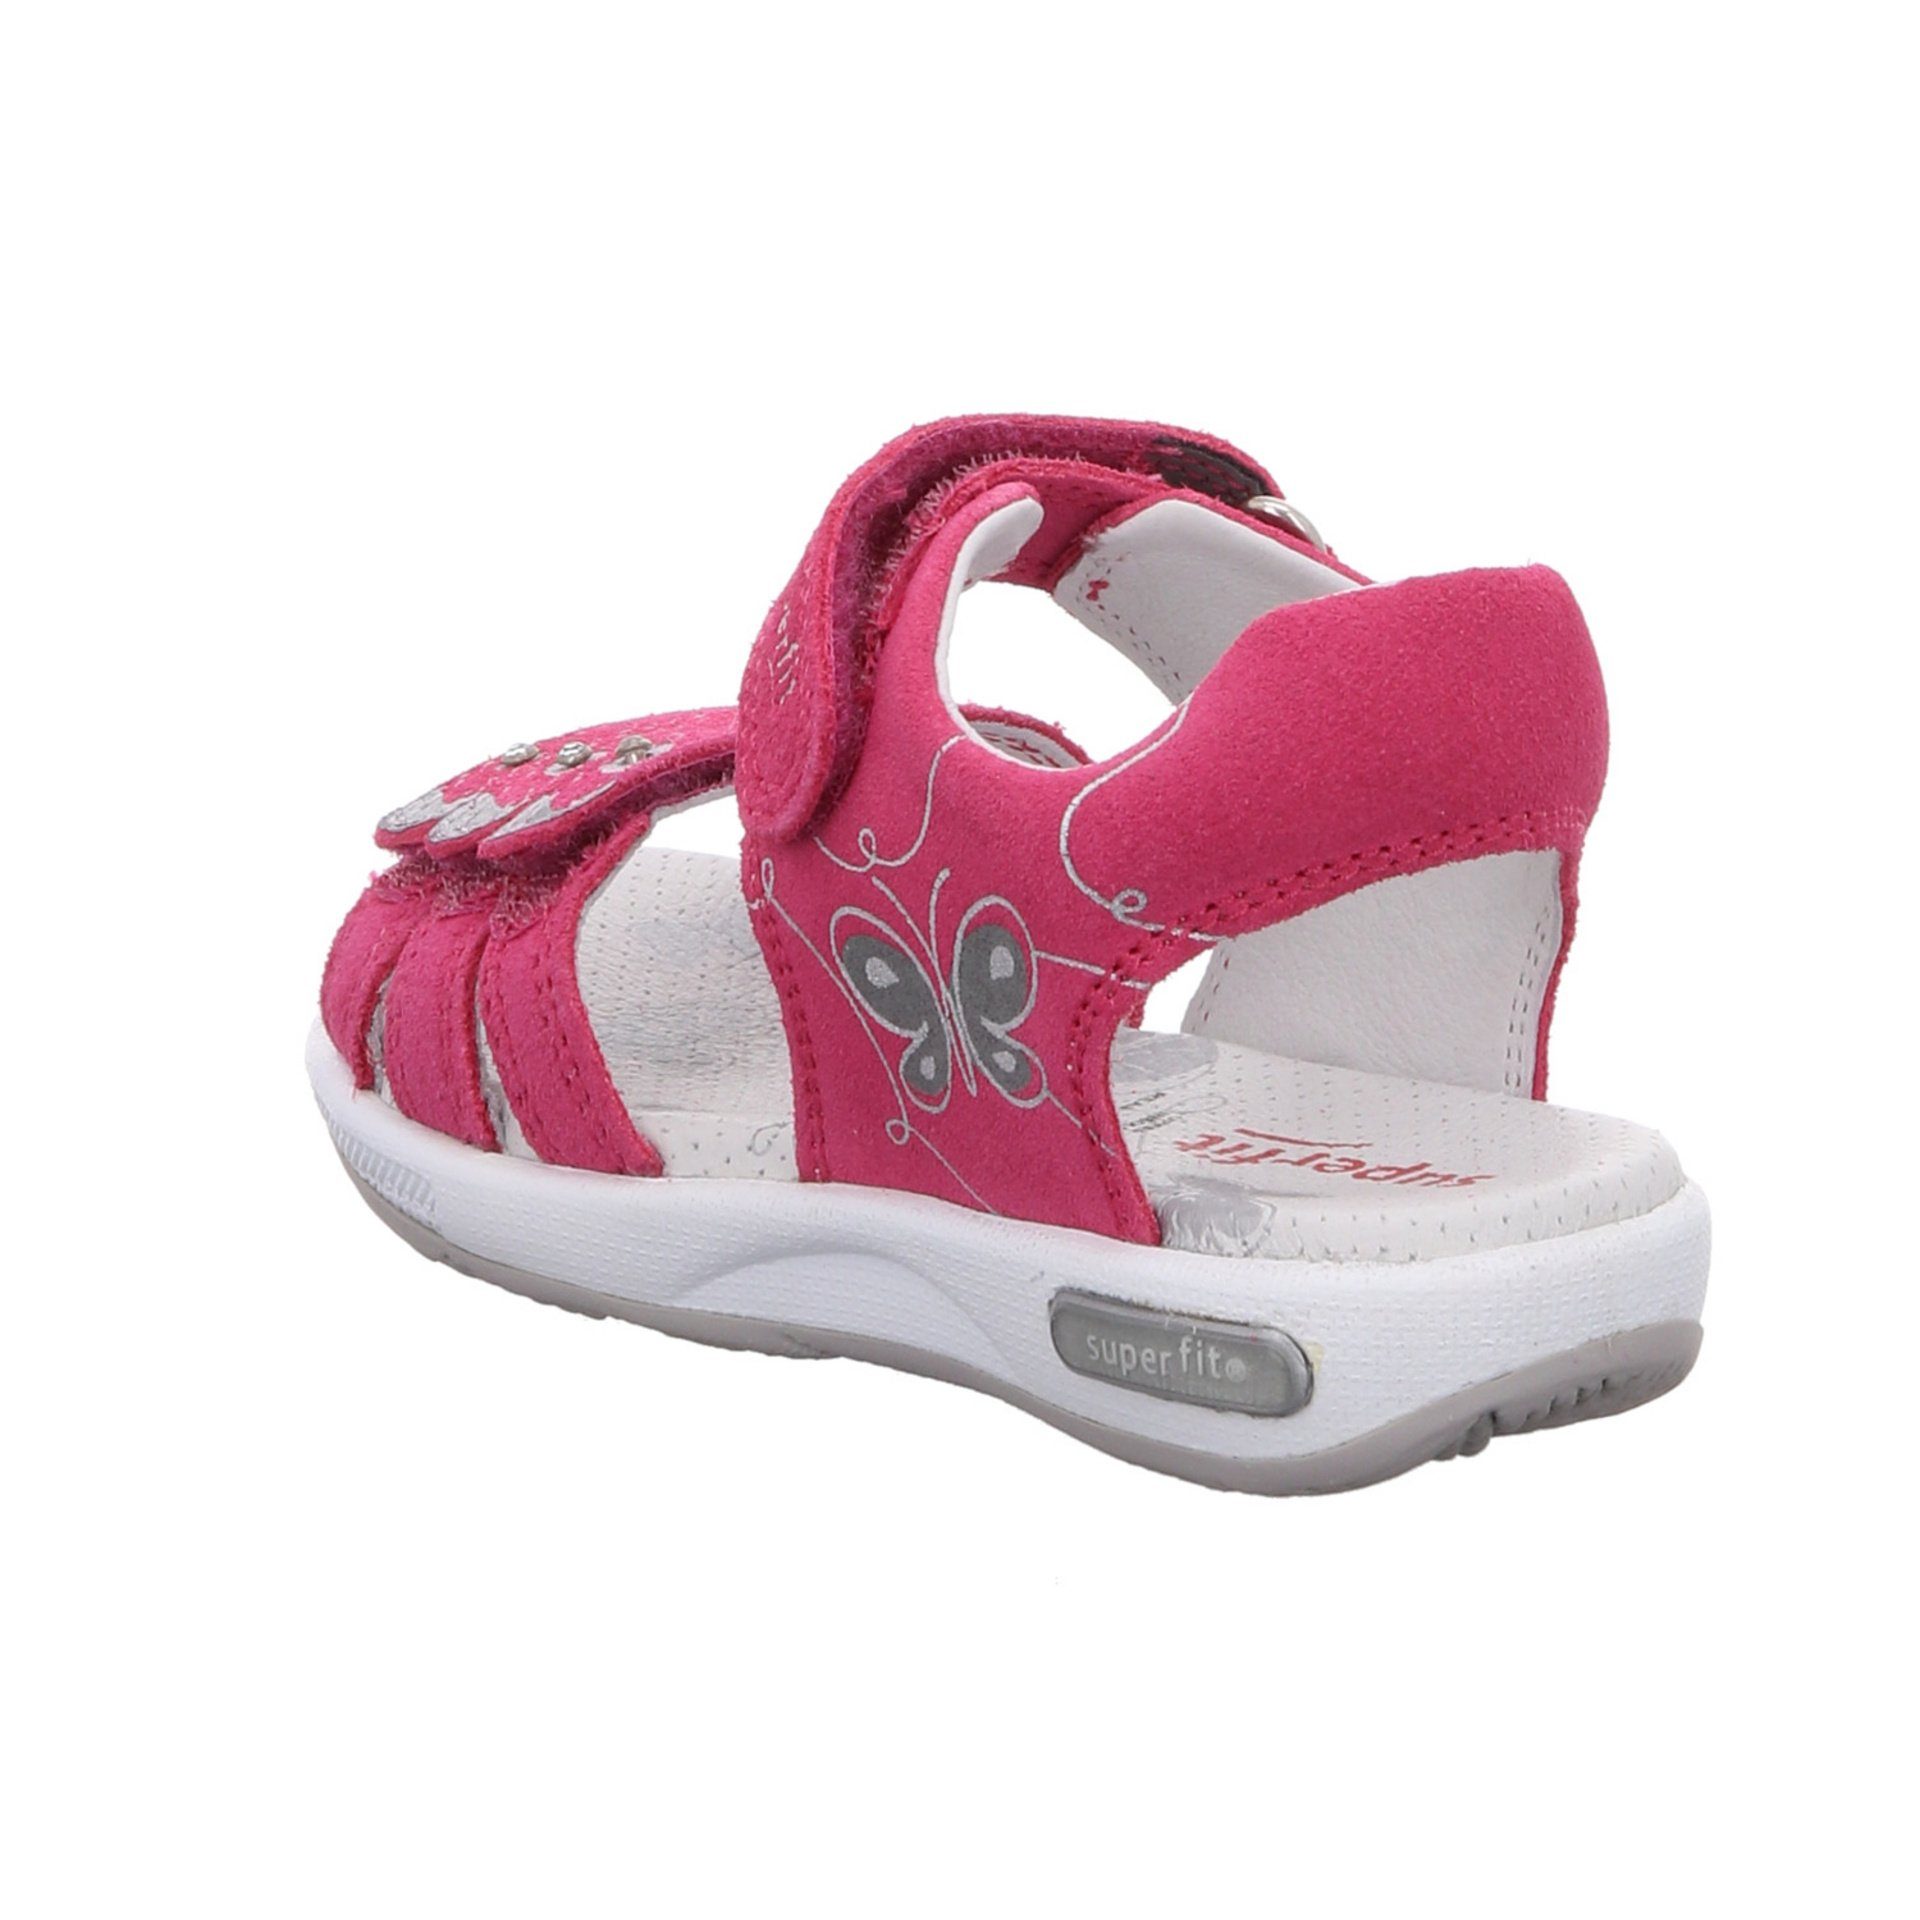 Emily Kombi Sandale Superfit Schuhe Kinderschuhe rot+lila sonst Sandale Mädchen Veloursleder Sandalen